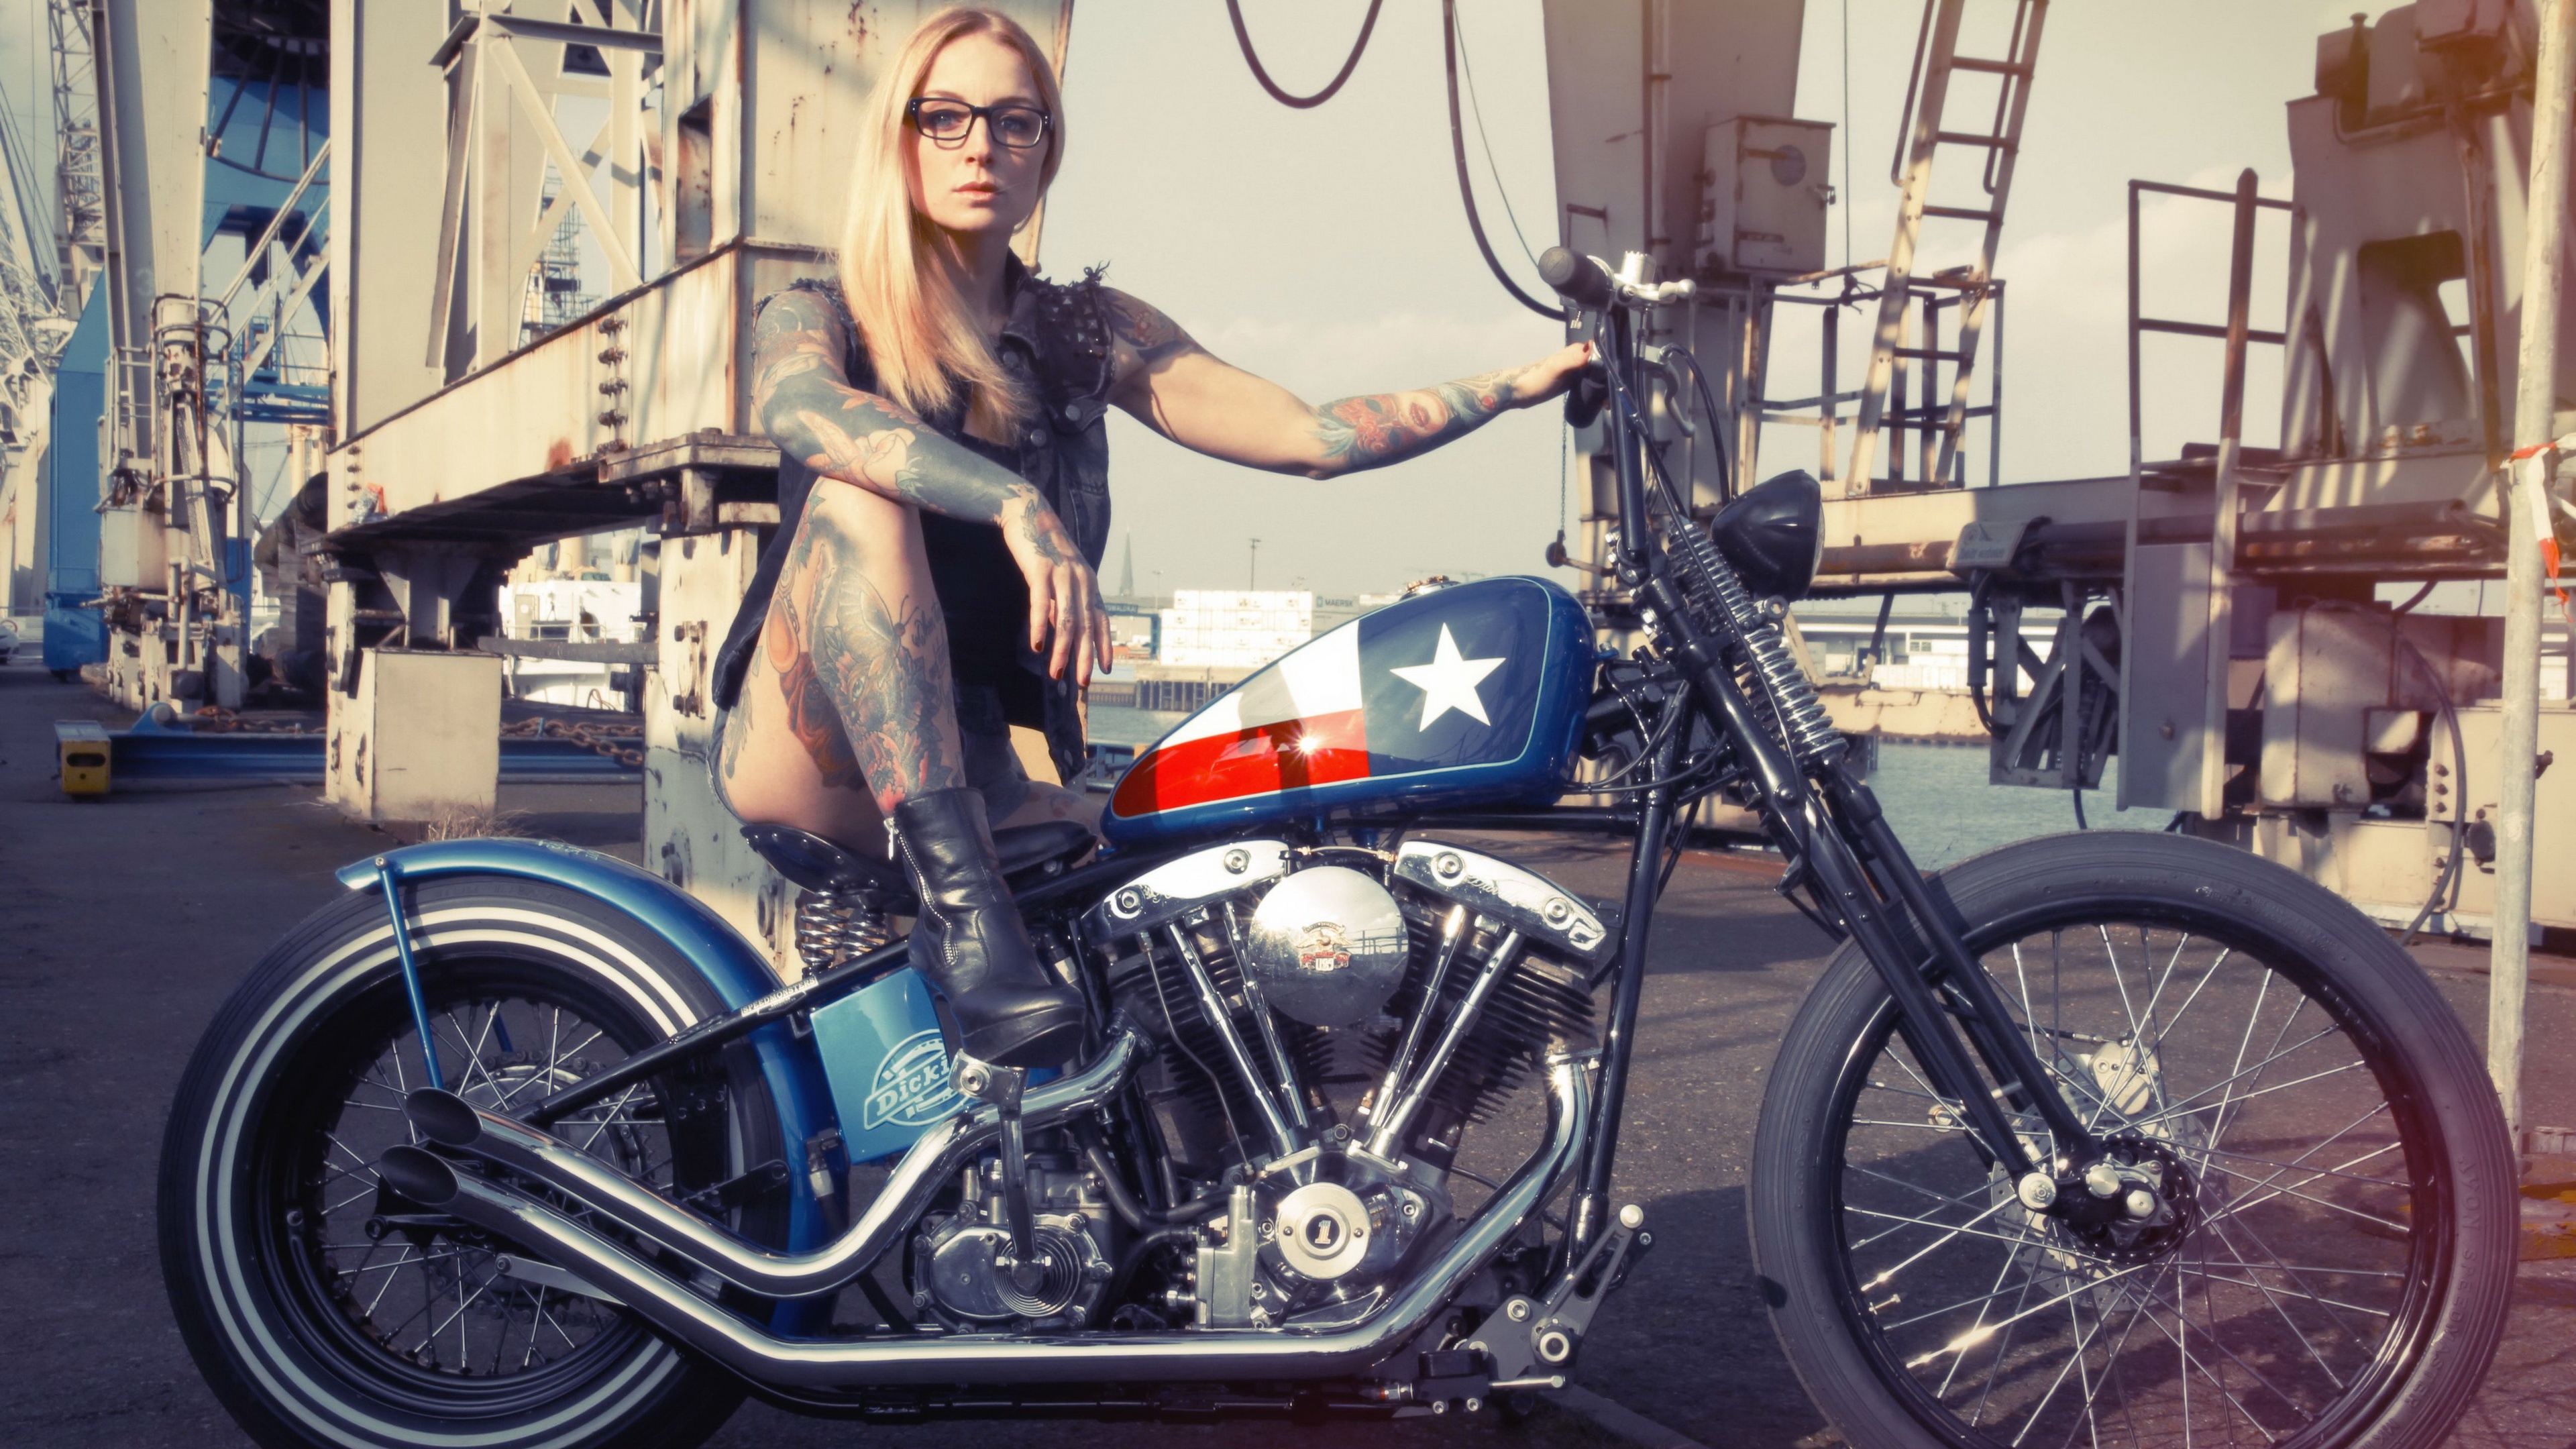 Скачать обои бесплатно Татуировка, Мотоцикл, Блондинка, Женщины, Девушки И Мотоциклы картинка на рабочий стол ПК